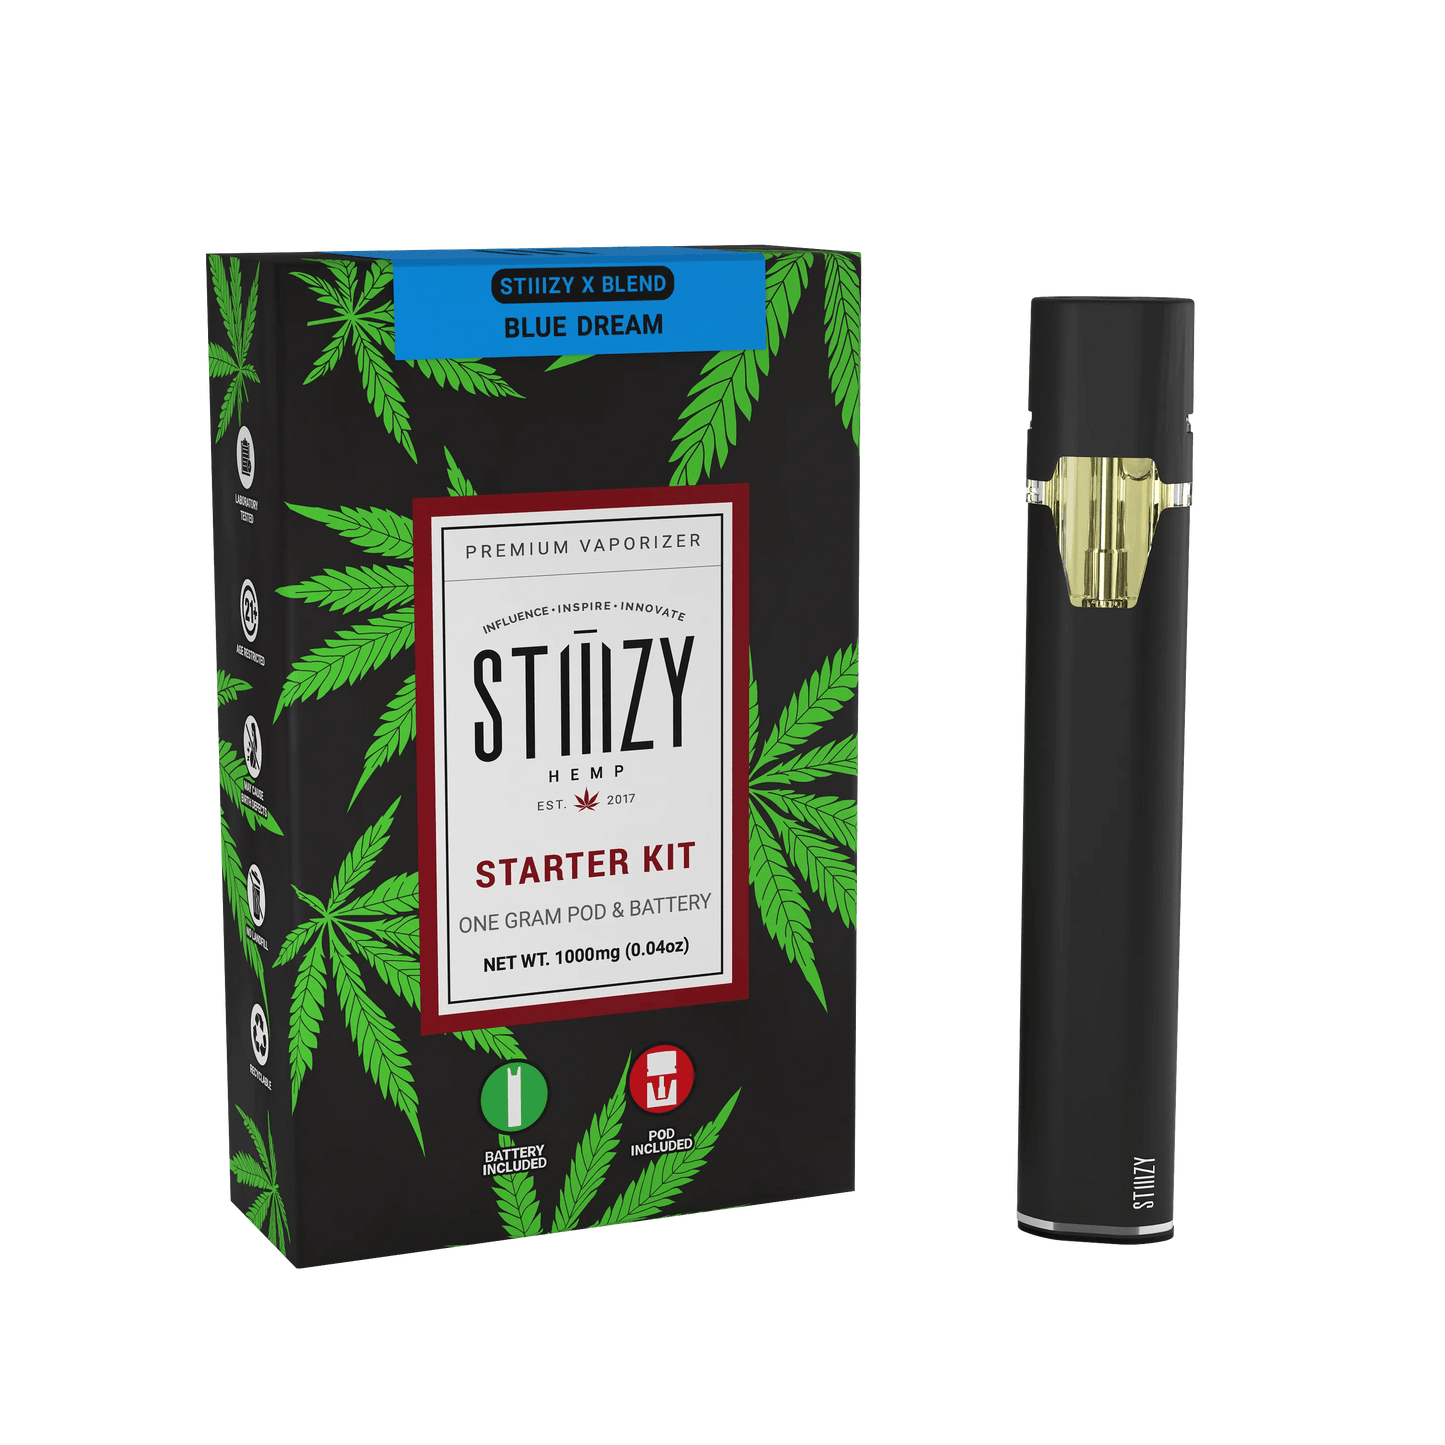 STIIIZY - Starter Kit - OG Standard 210mAh Black Battery + X Blend Pod (1g)